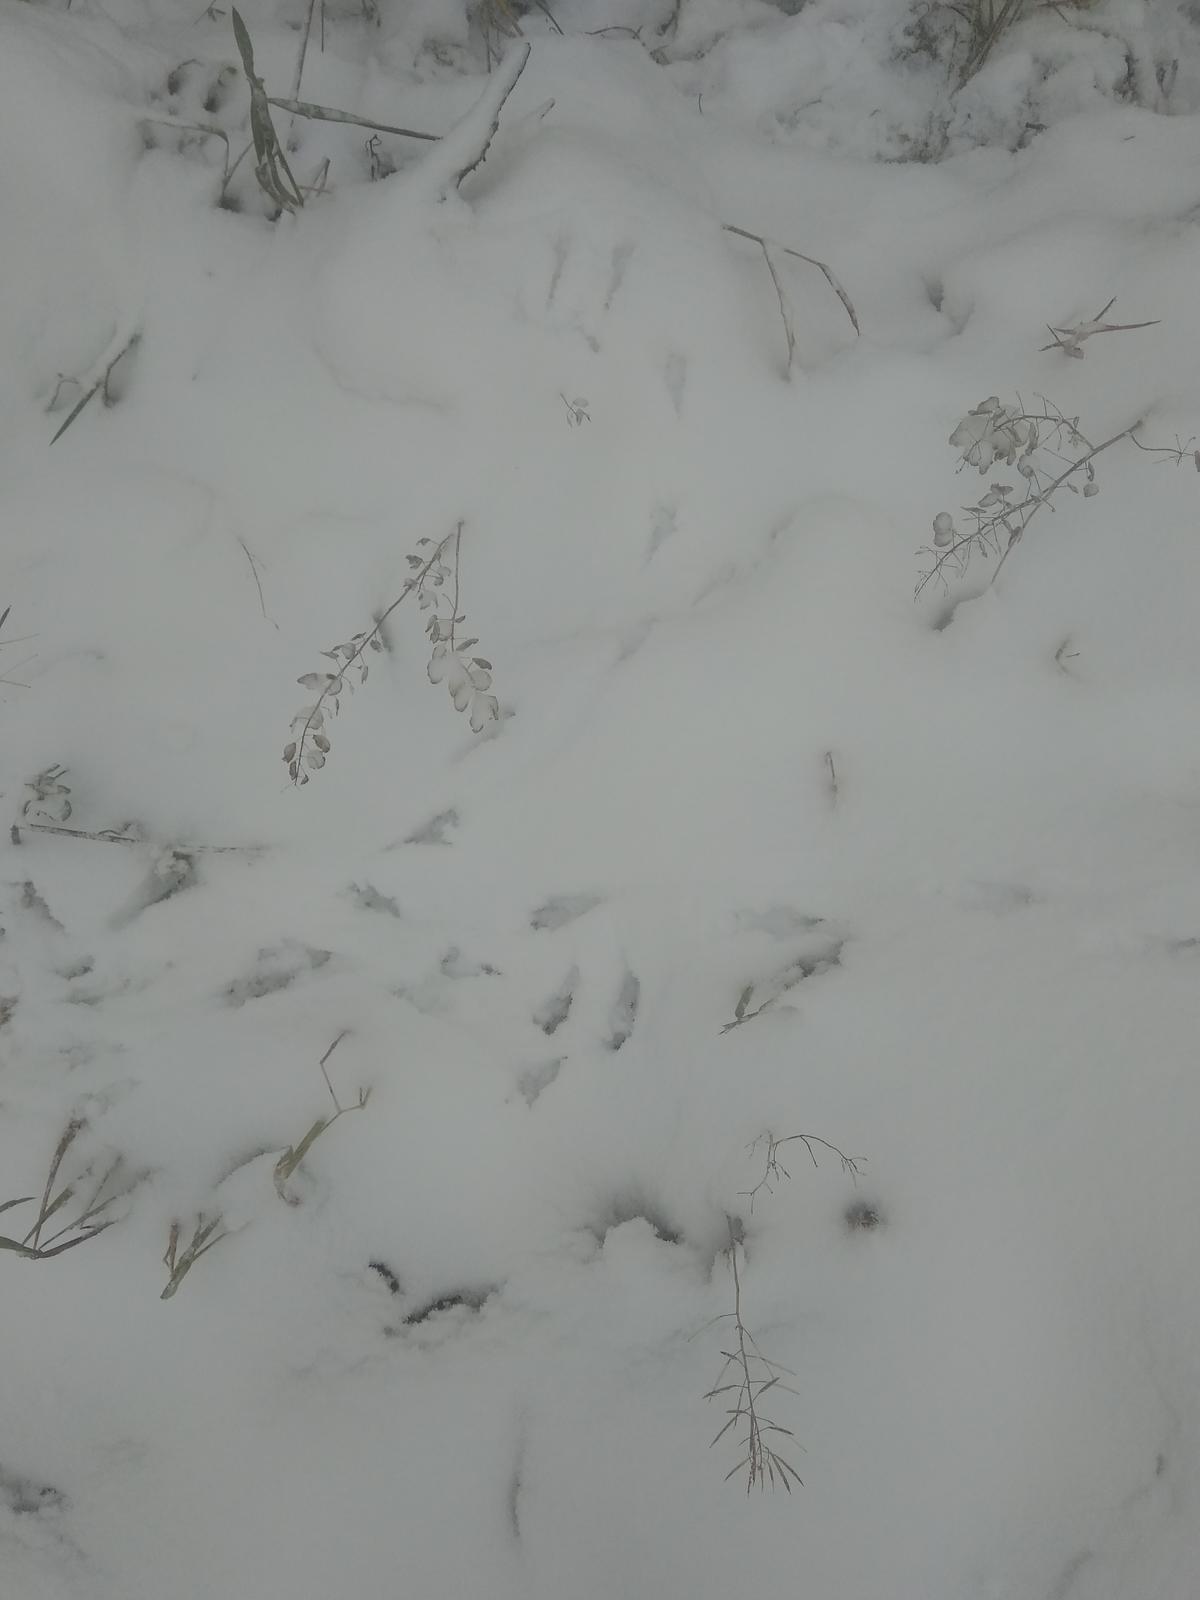 Ответ был снег. Птичьи следы на снегу. Следы лося на снегу. Следы кабана на снегу. Следы хорька на снегу.